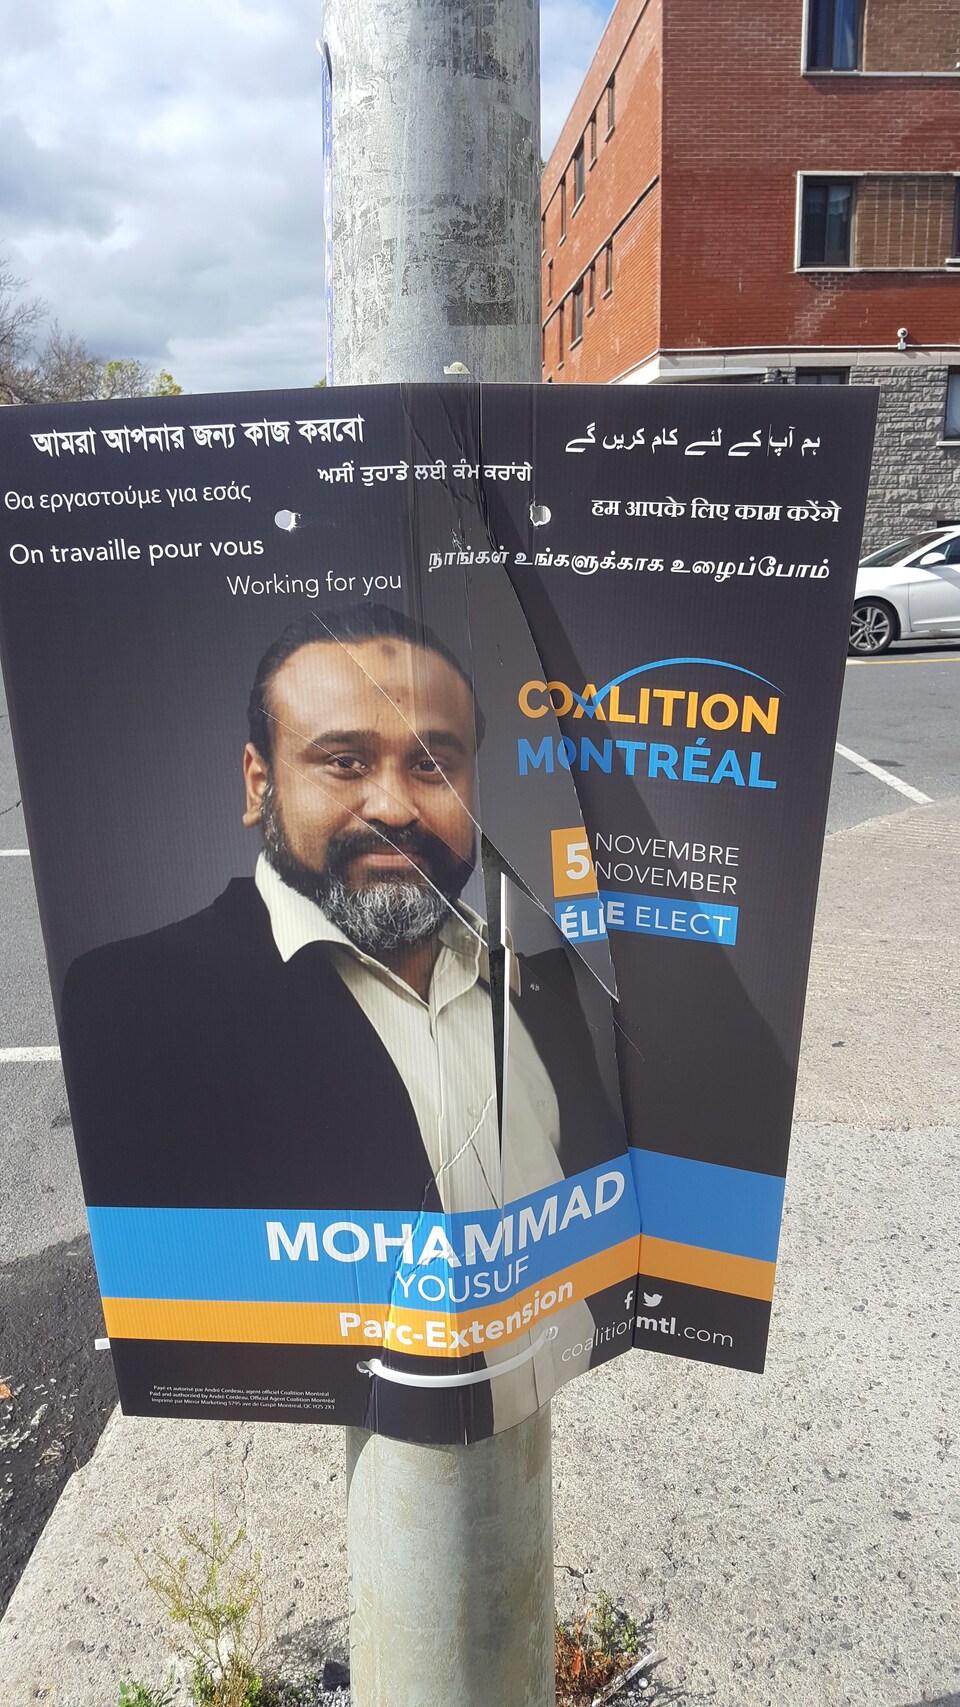 L'affiche vandalisée du candidat municipal Mohammad Yousuf, dans Parc-Extension, qui a été déchirée.